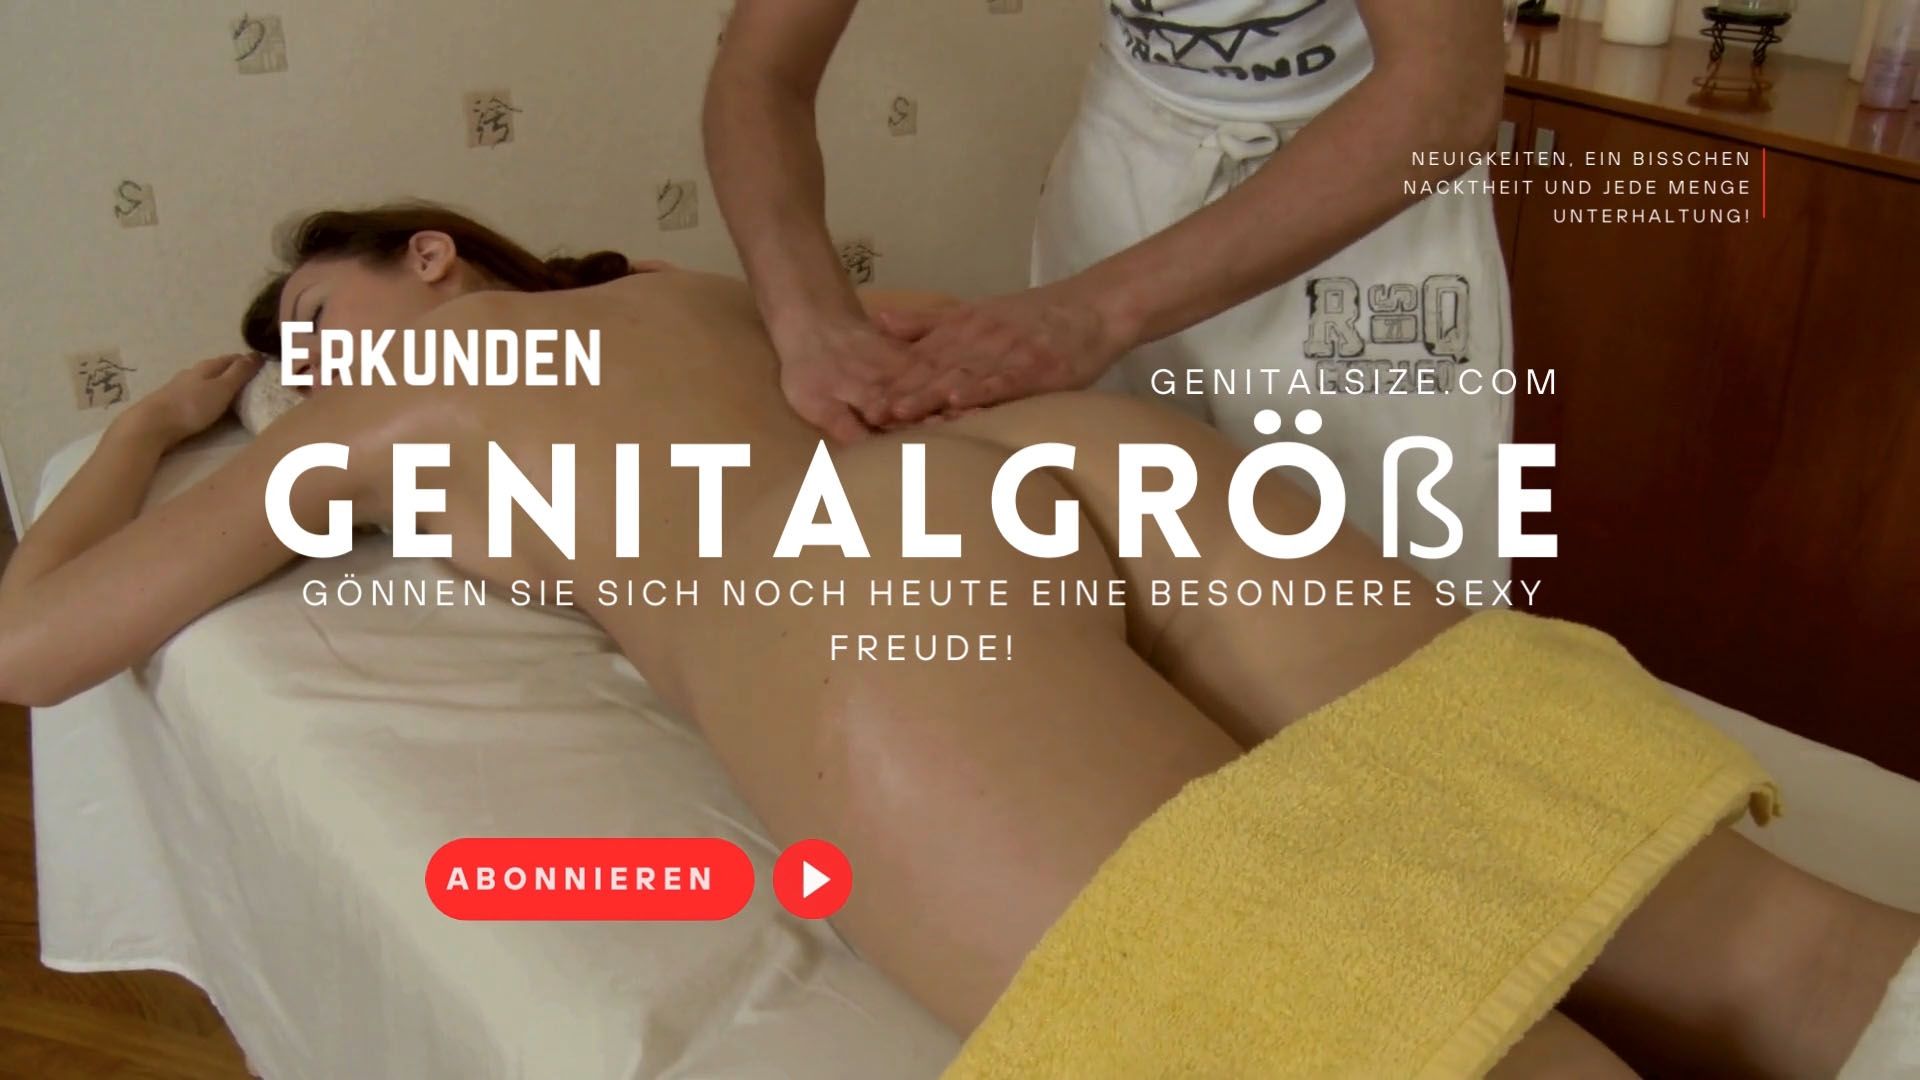 Videoanzeige mit einer jungen Frau, die nackt liegt und sich eine entspannende Massage gönnt